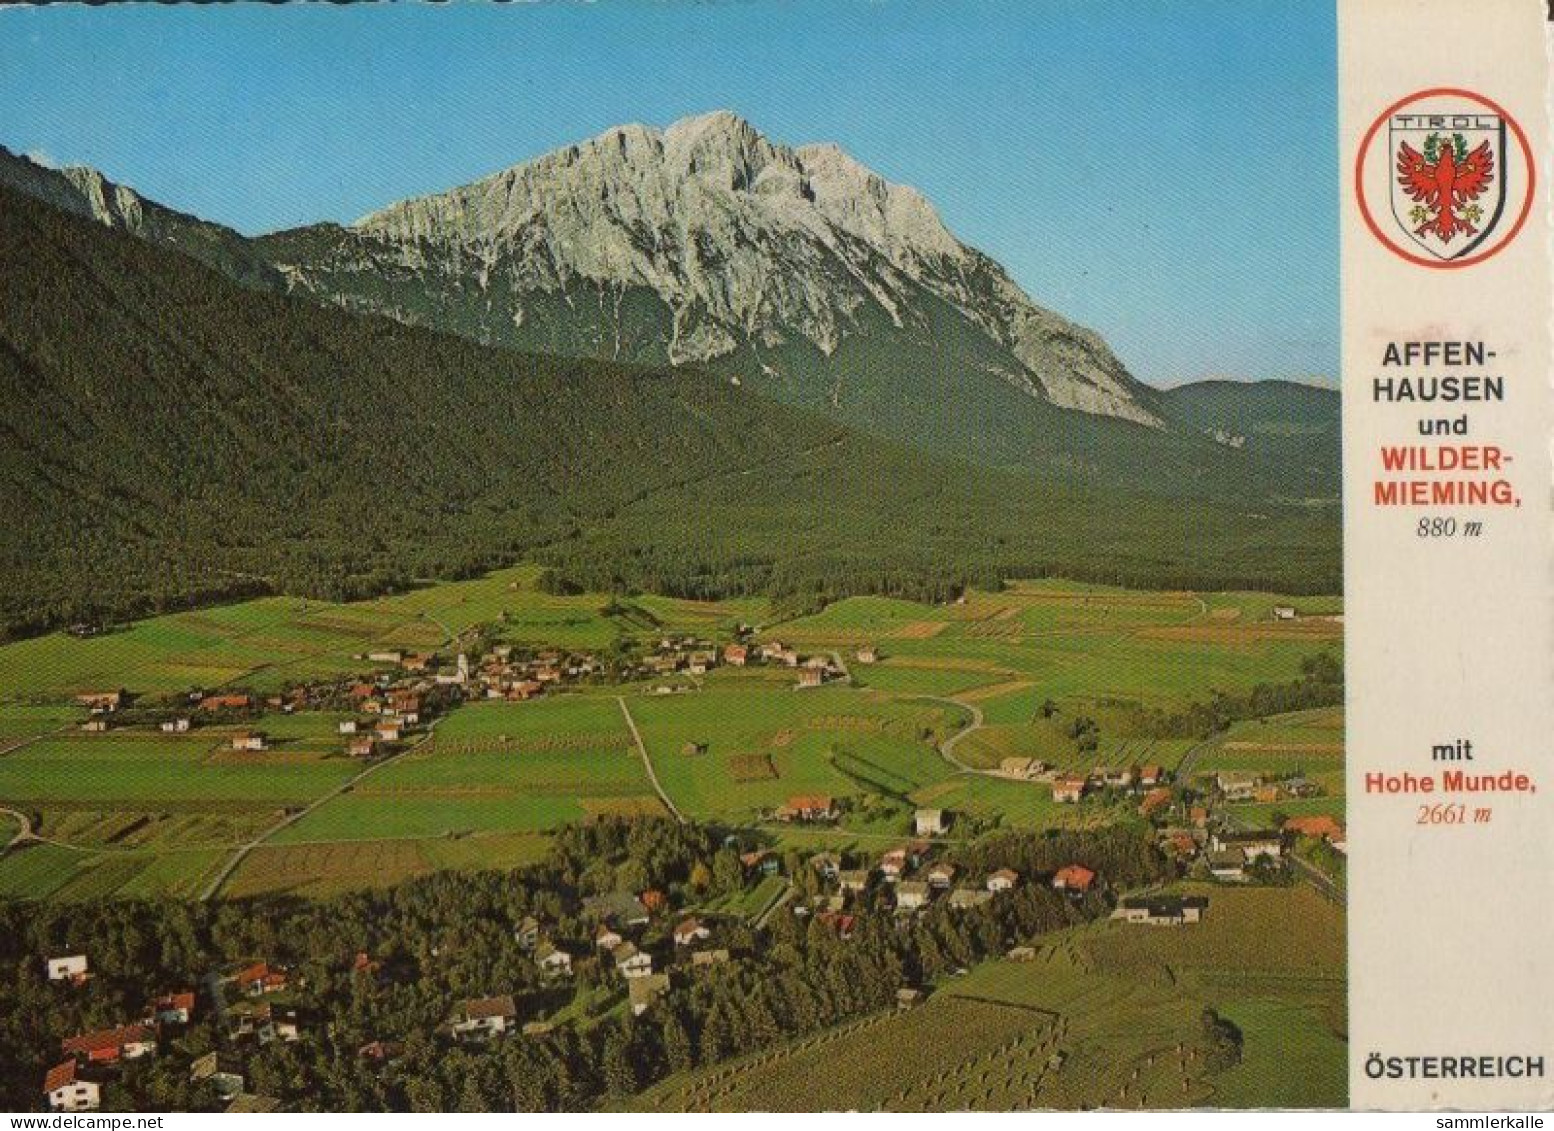 34929 - Österreich - Wildermieming-Affenhausen - 1977 - Innsbruck